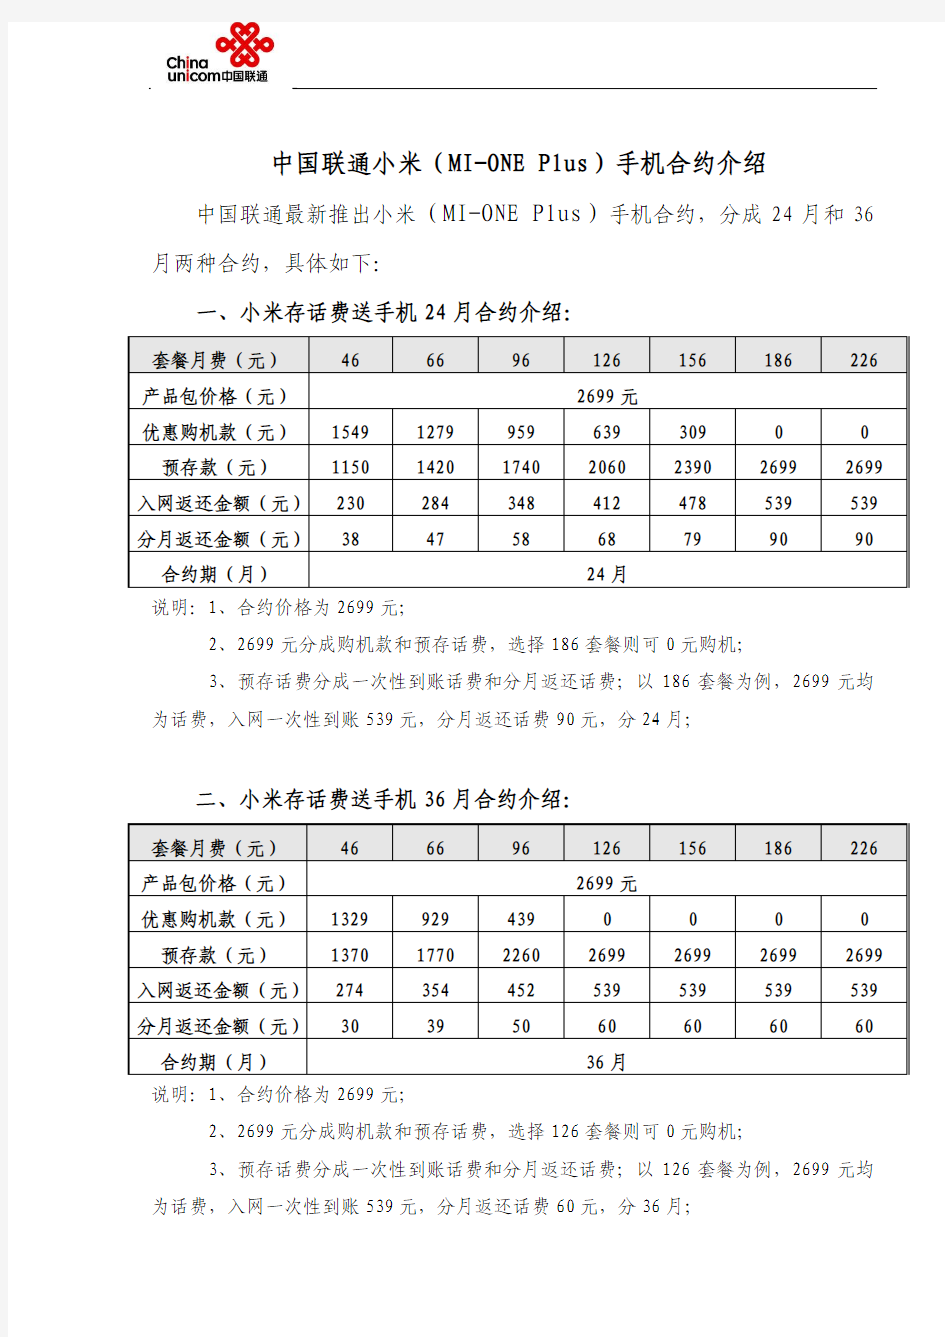 中国联通2012年小米内部手机合约